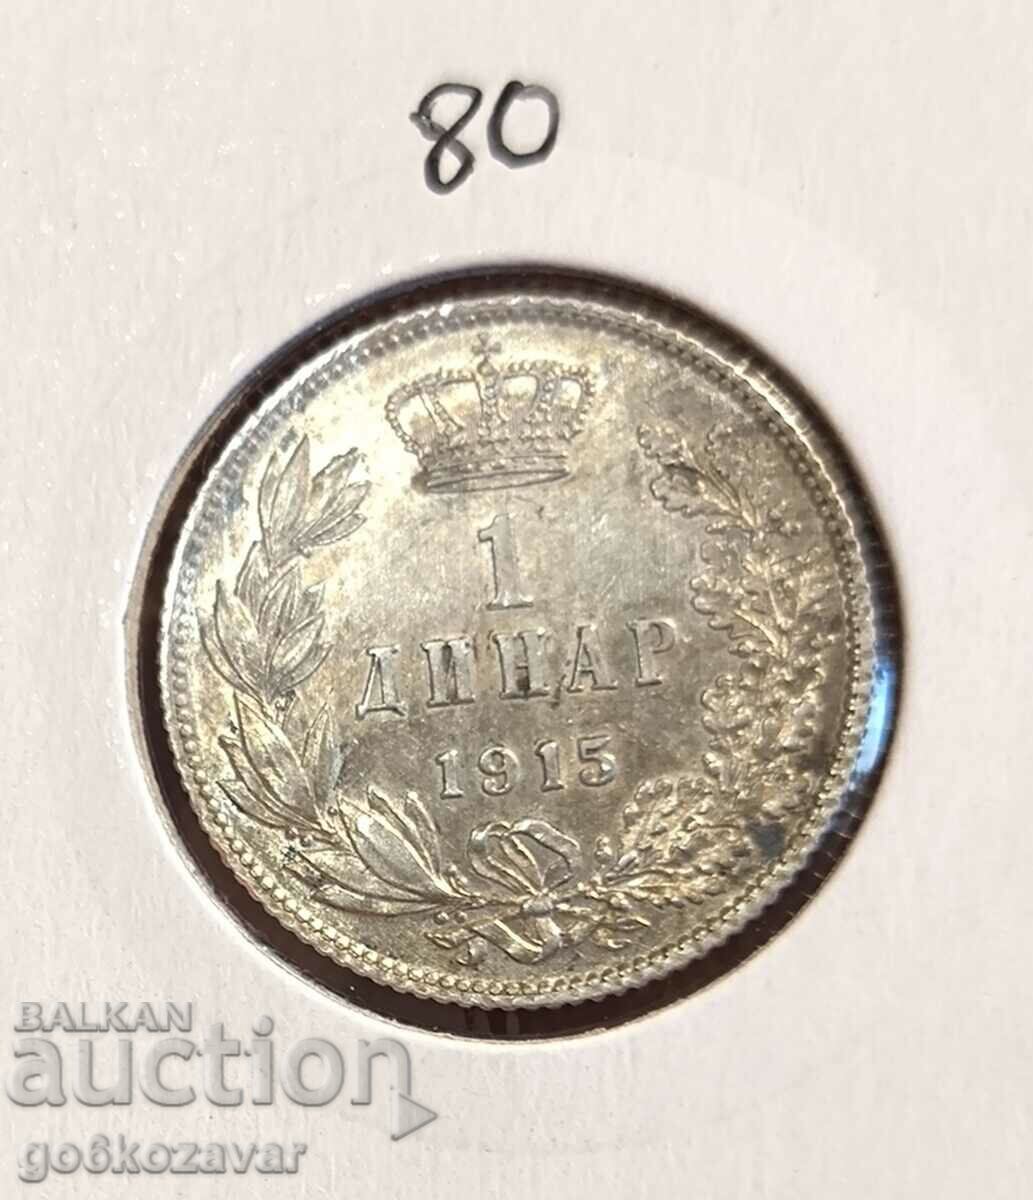 Serbia 1 dinar 1915 Silver! Top coin!